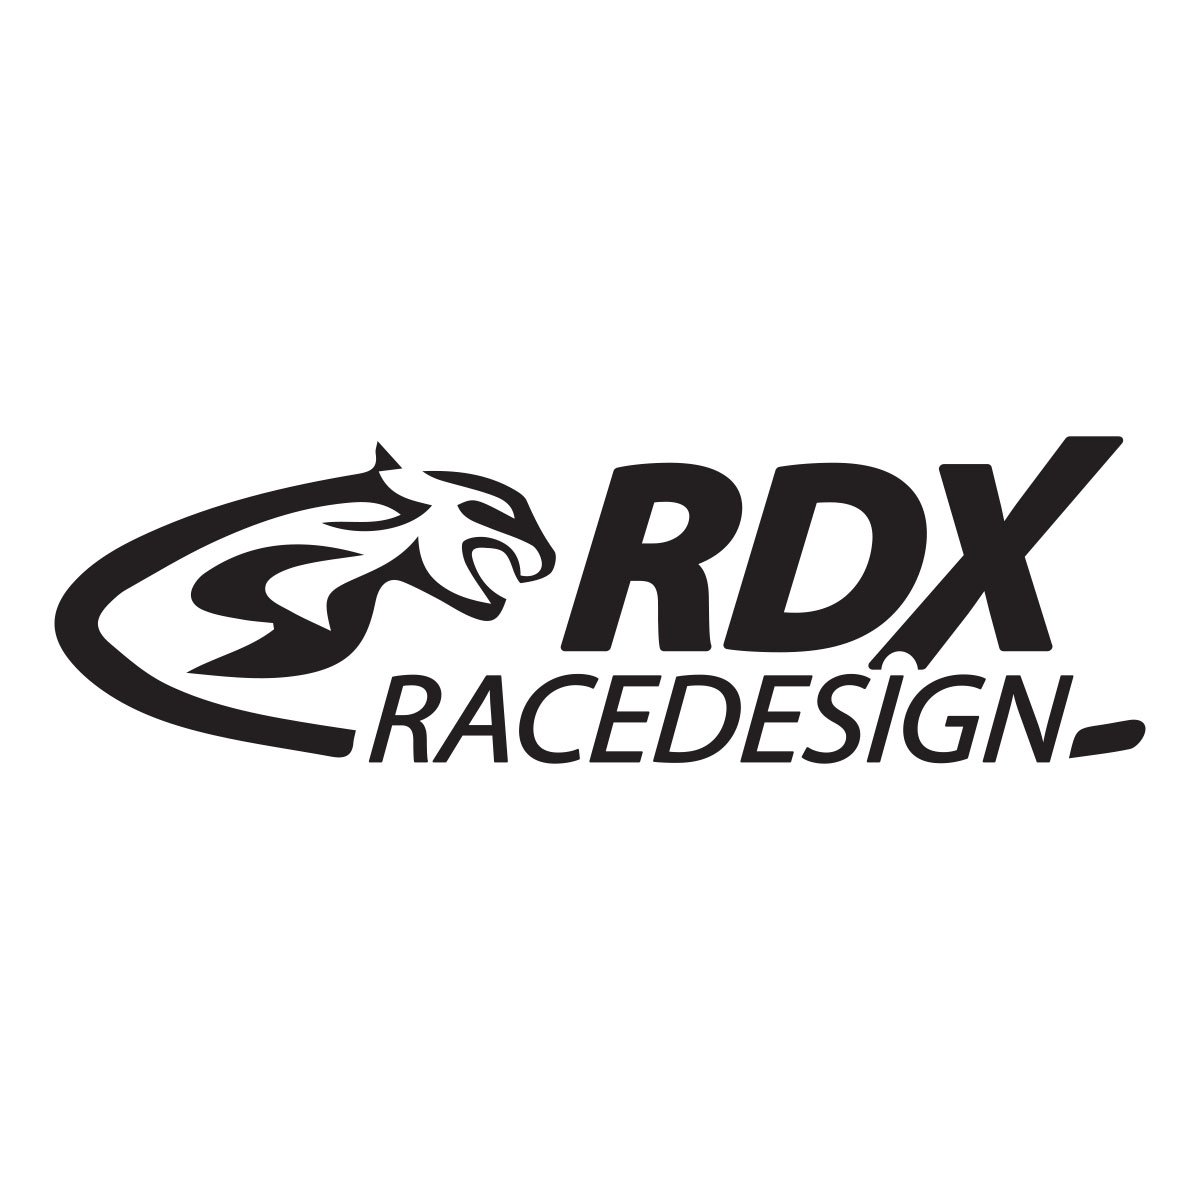 rdx racedesign logo